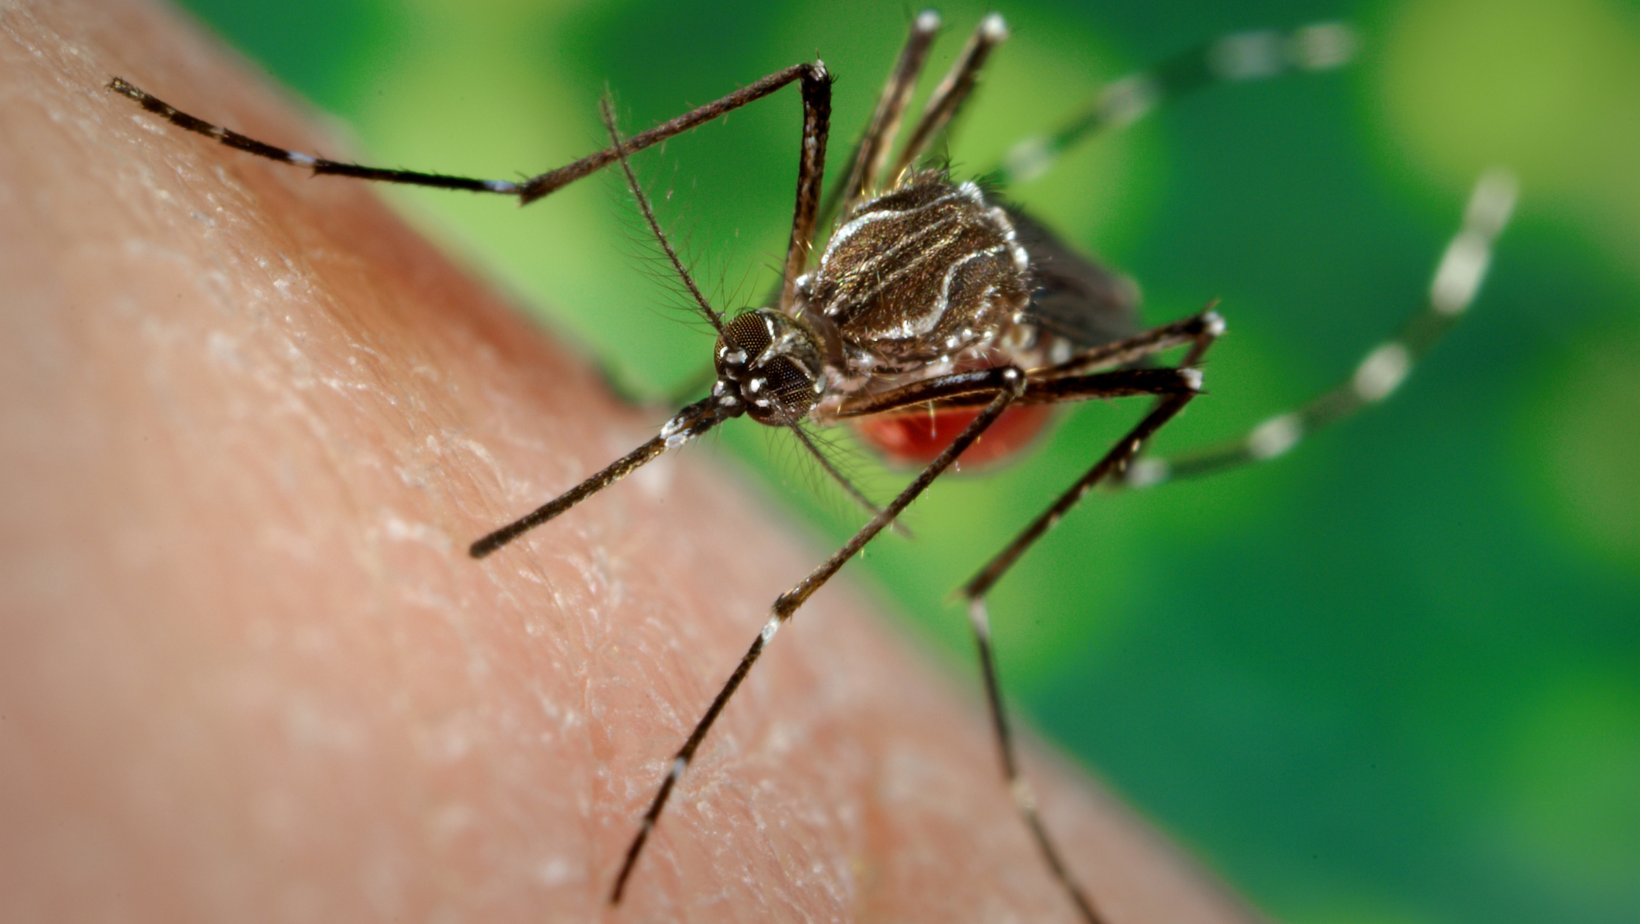 Idean un 'mapamundi' interactivo de los mosquitos para ayudar a combatir la malaria